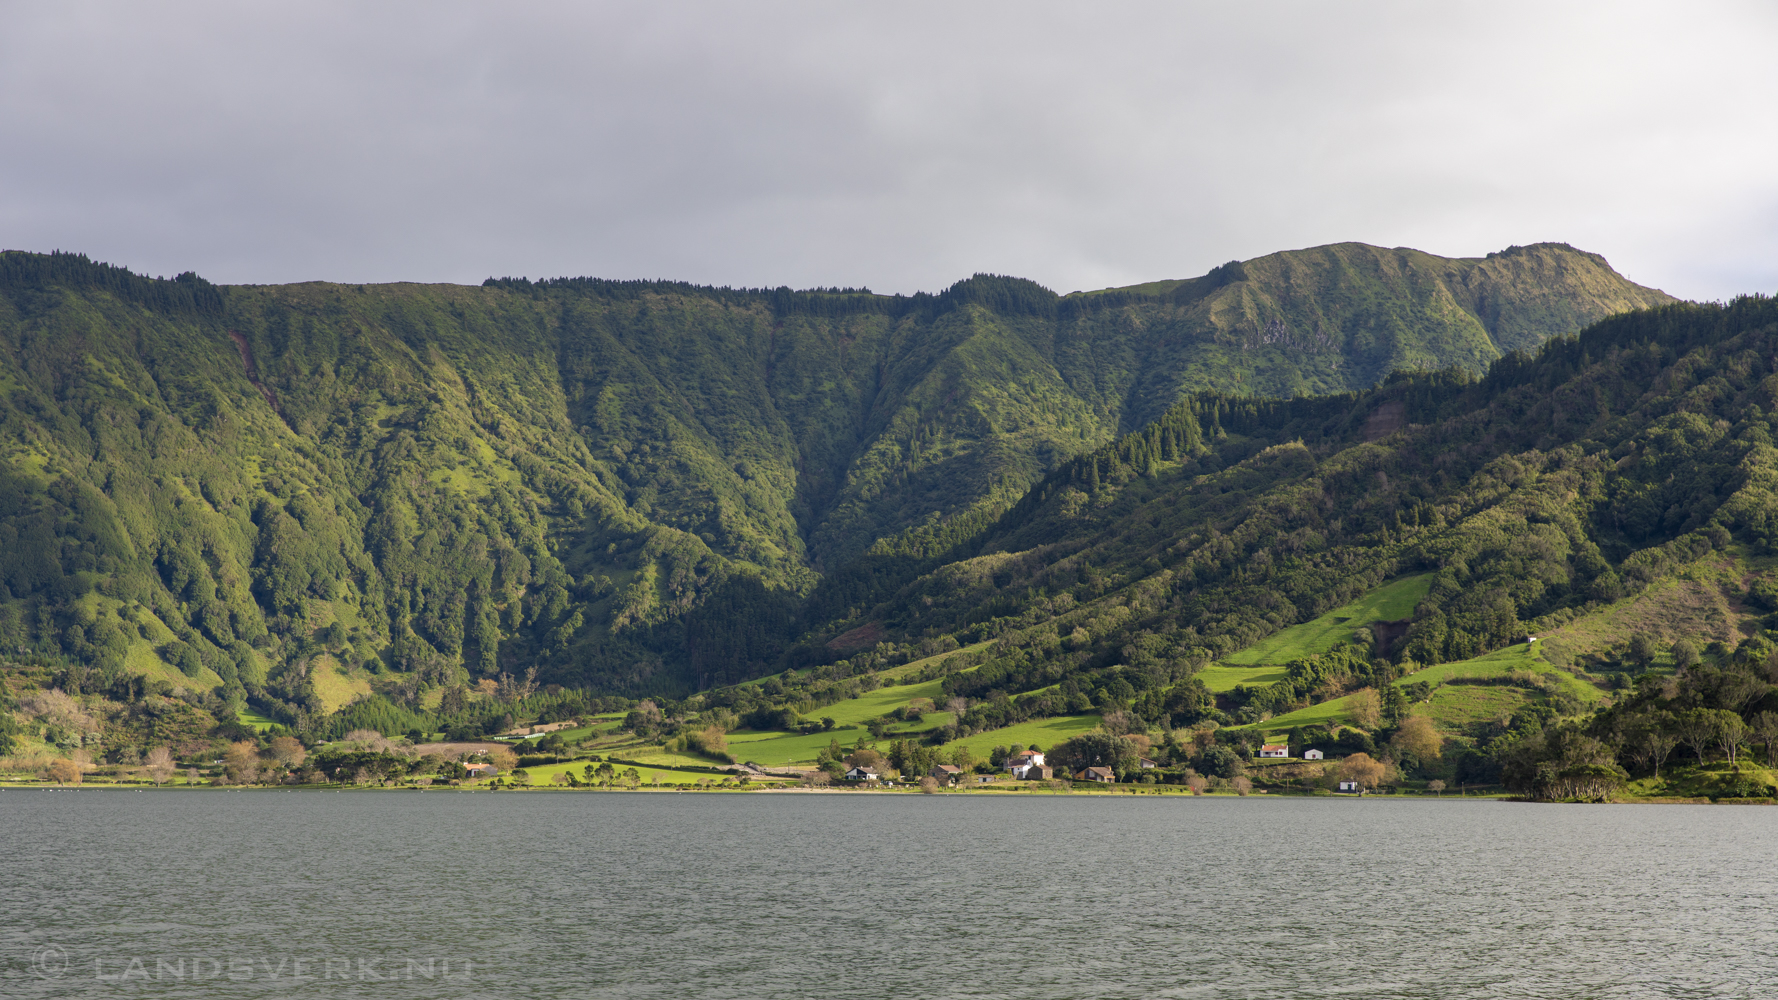 Lagoa Azul, Sete Cidades. São Miguel, Azores. (Canon EOS 5D Mark IV / Canon EF 24-70mm f/2.8 L II USM)